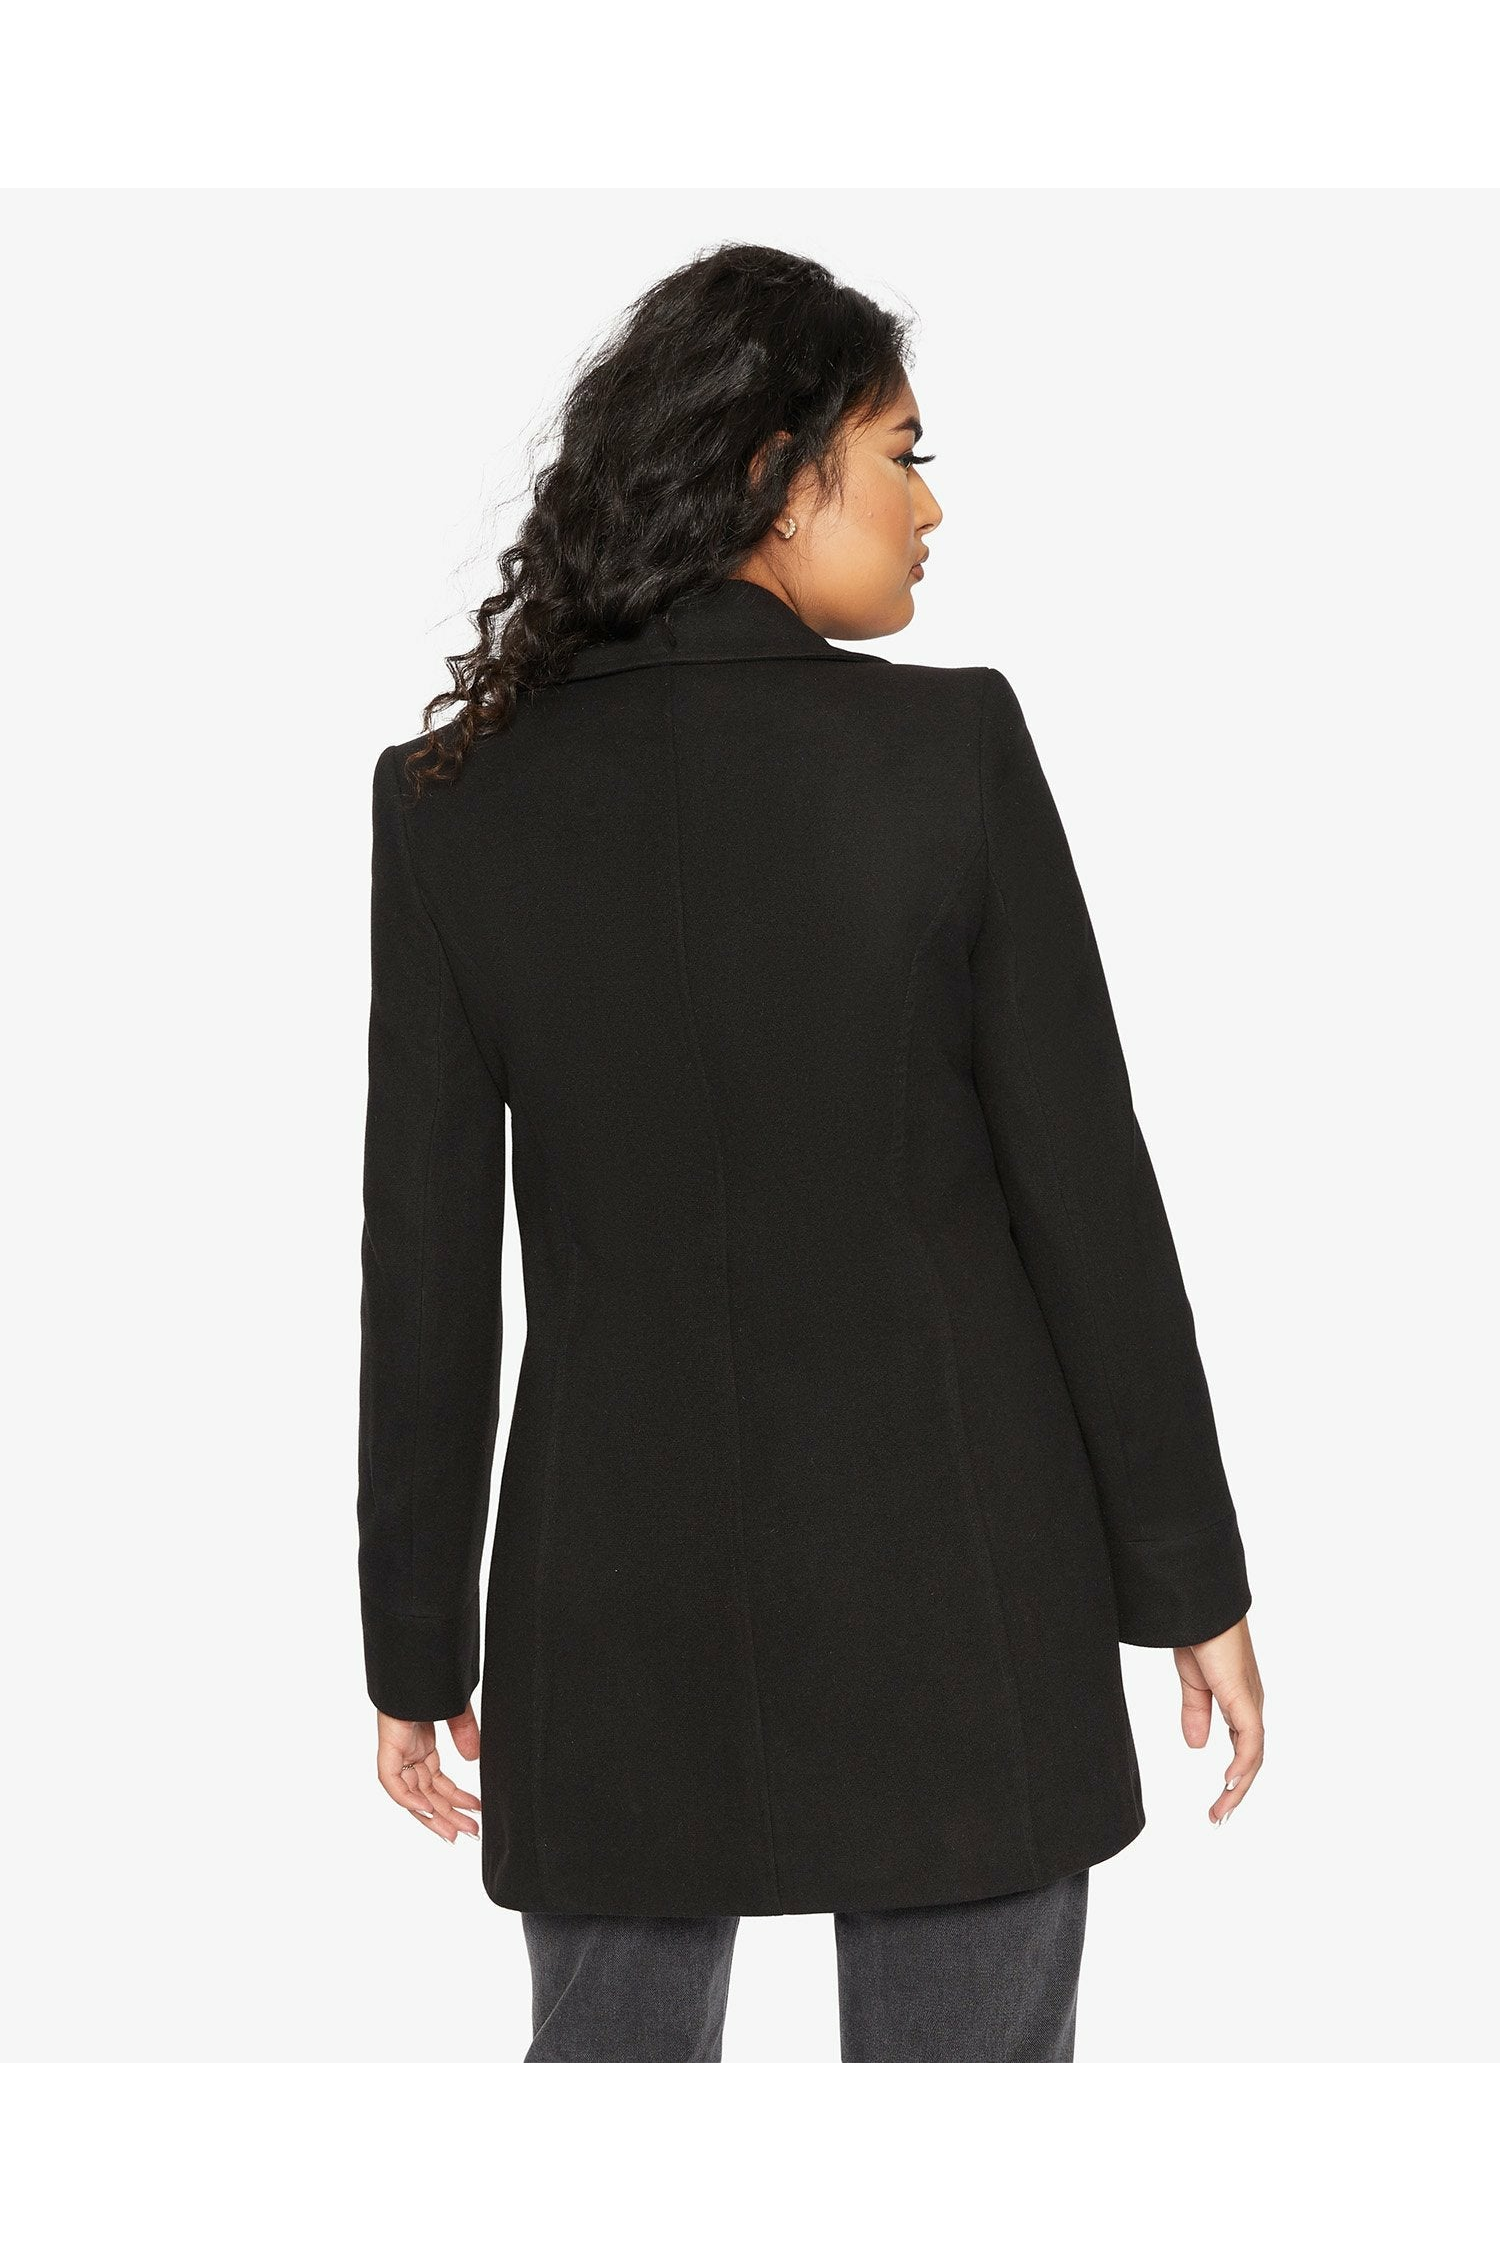 De La Creme Womens Wool Blend Hip Length Covert Coat De La Creme